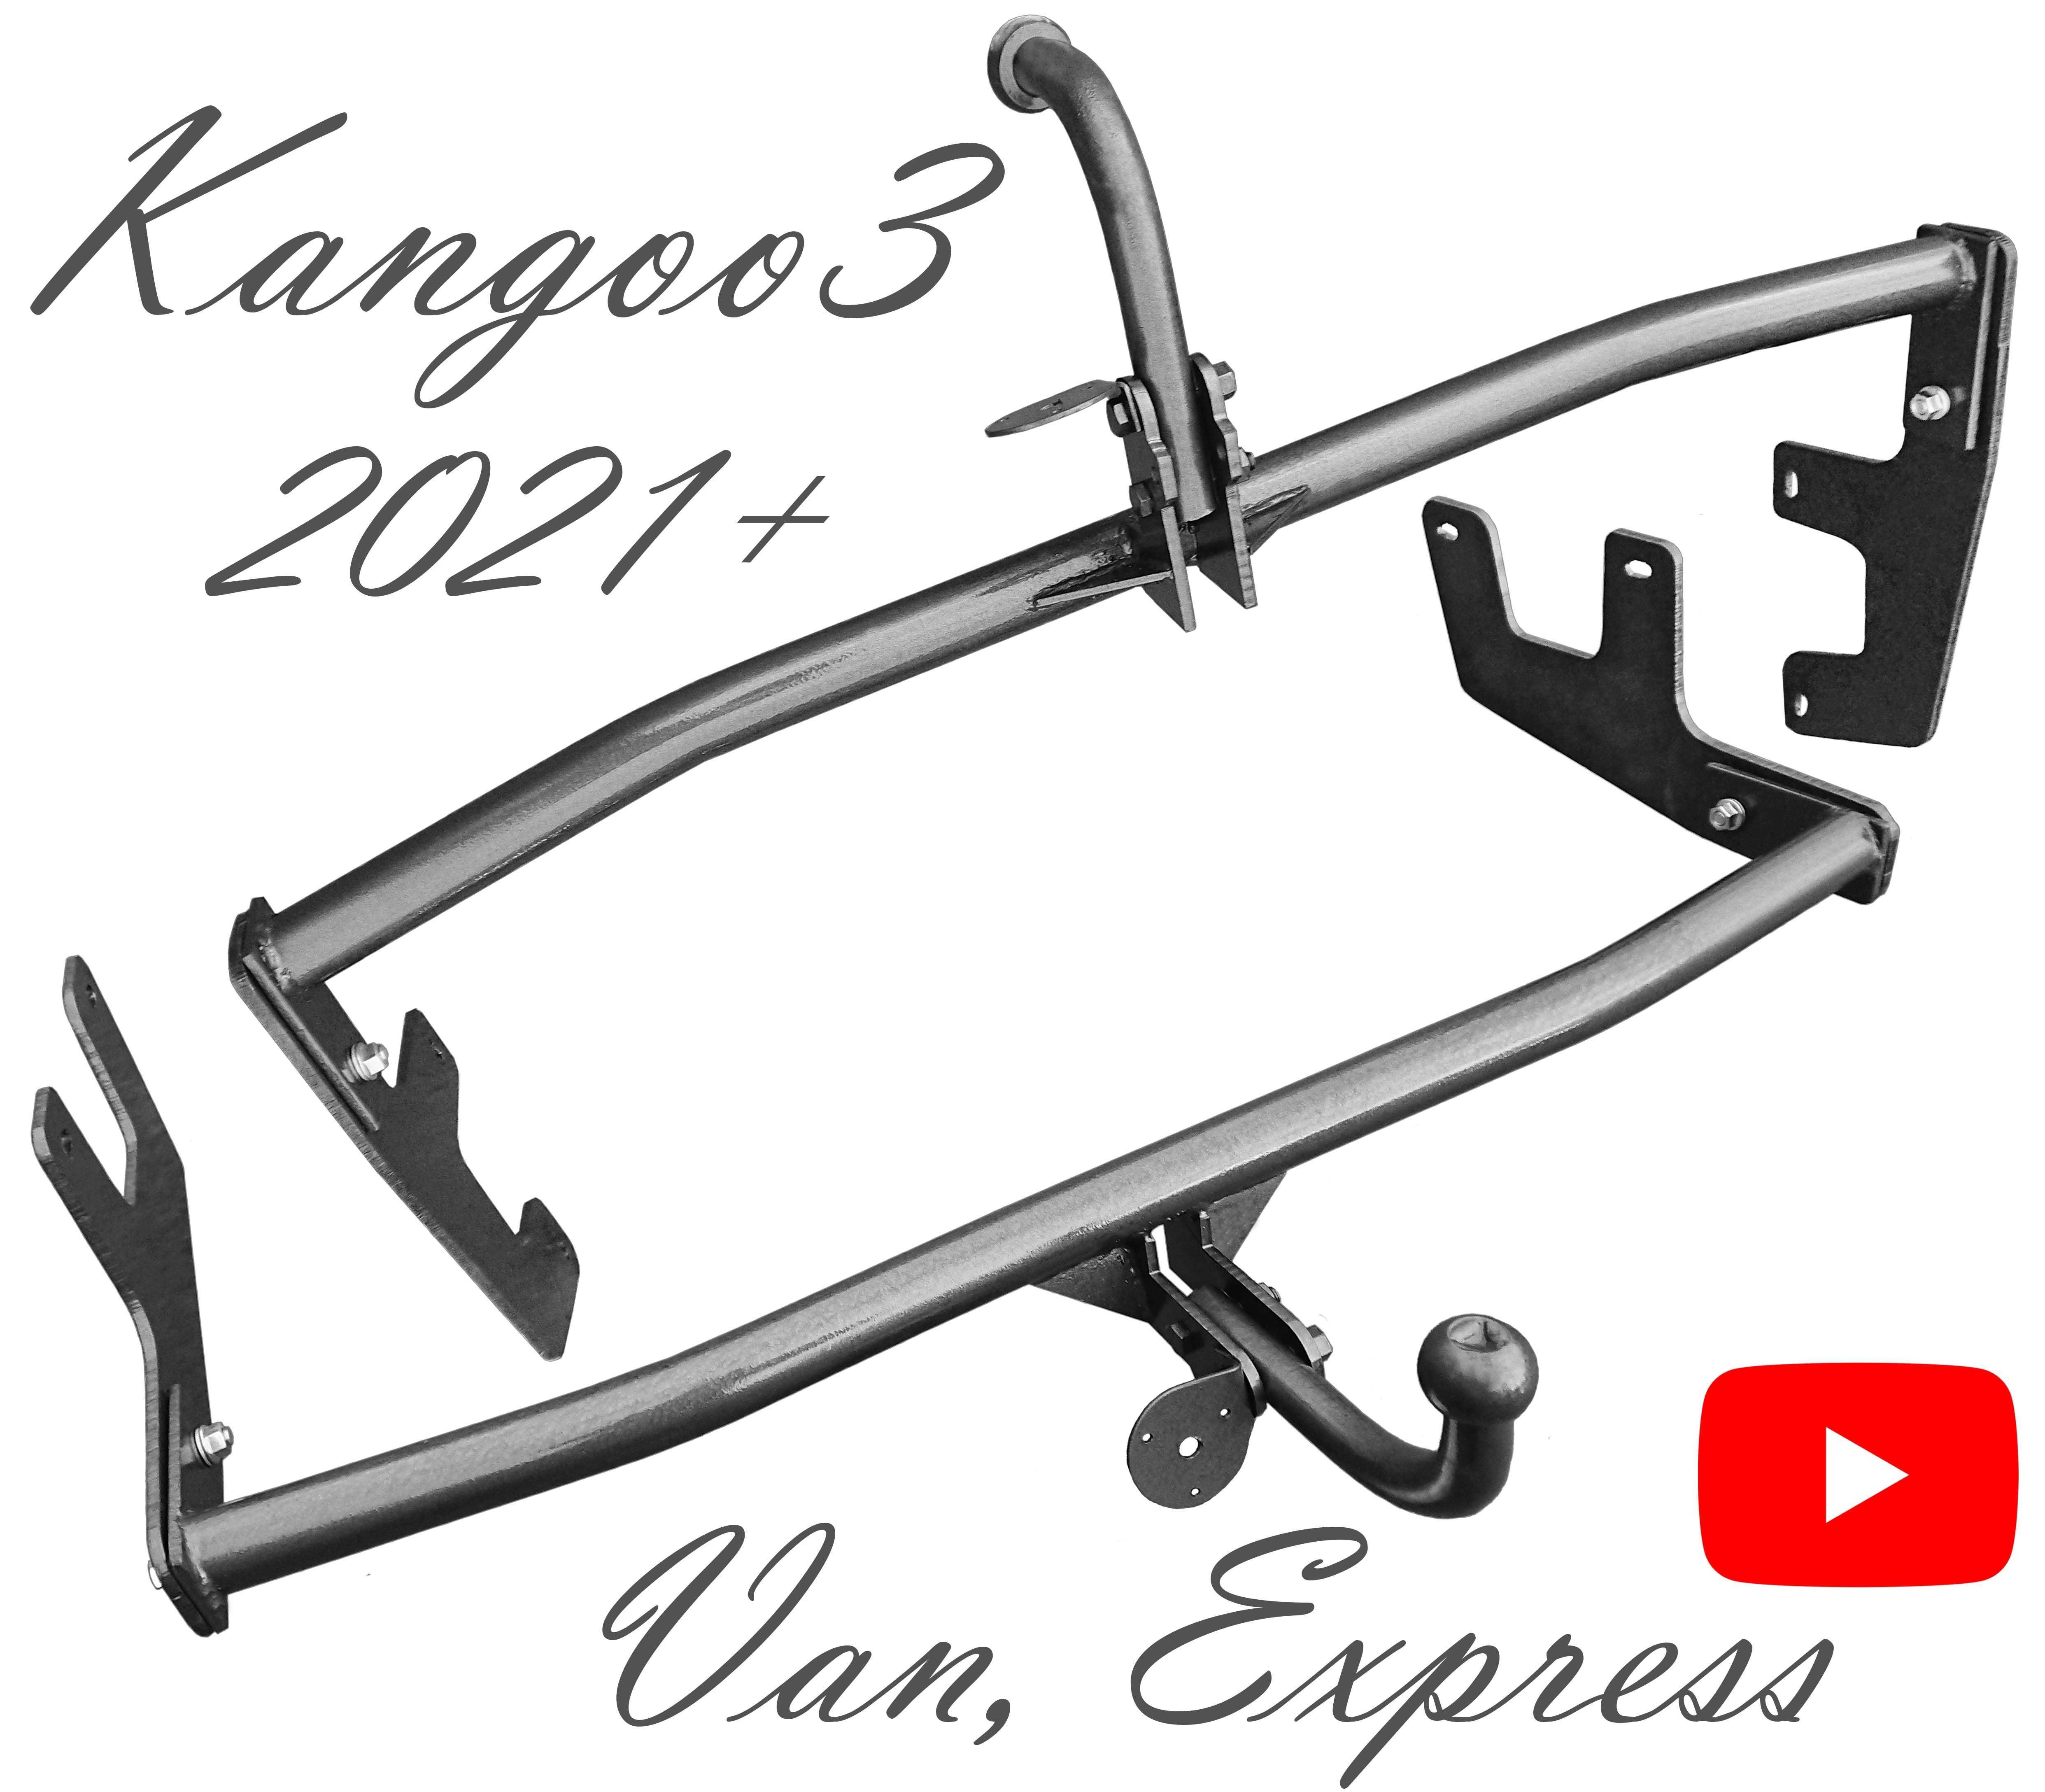 Фаркоп Рено Кенго 2 Citan Kangoo 2007-2021 Кенго 3 Van Exprress 2021+